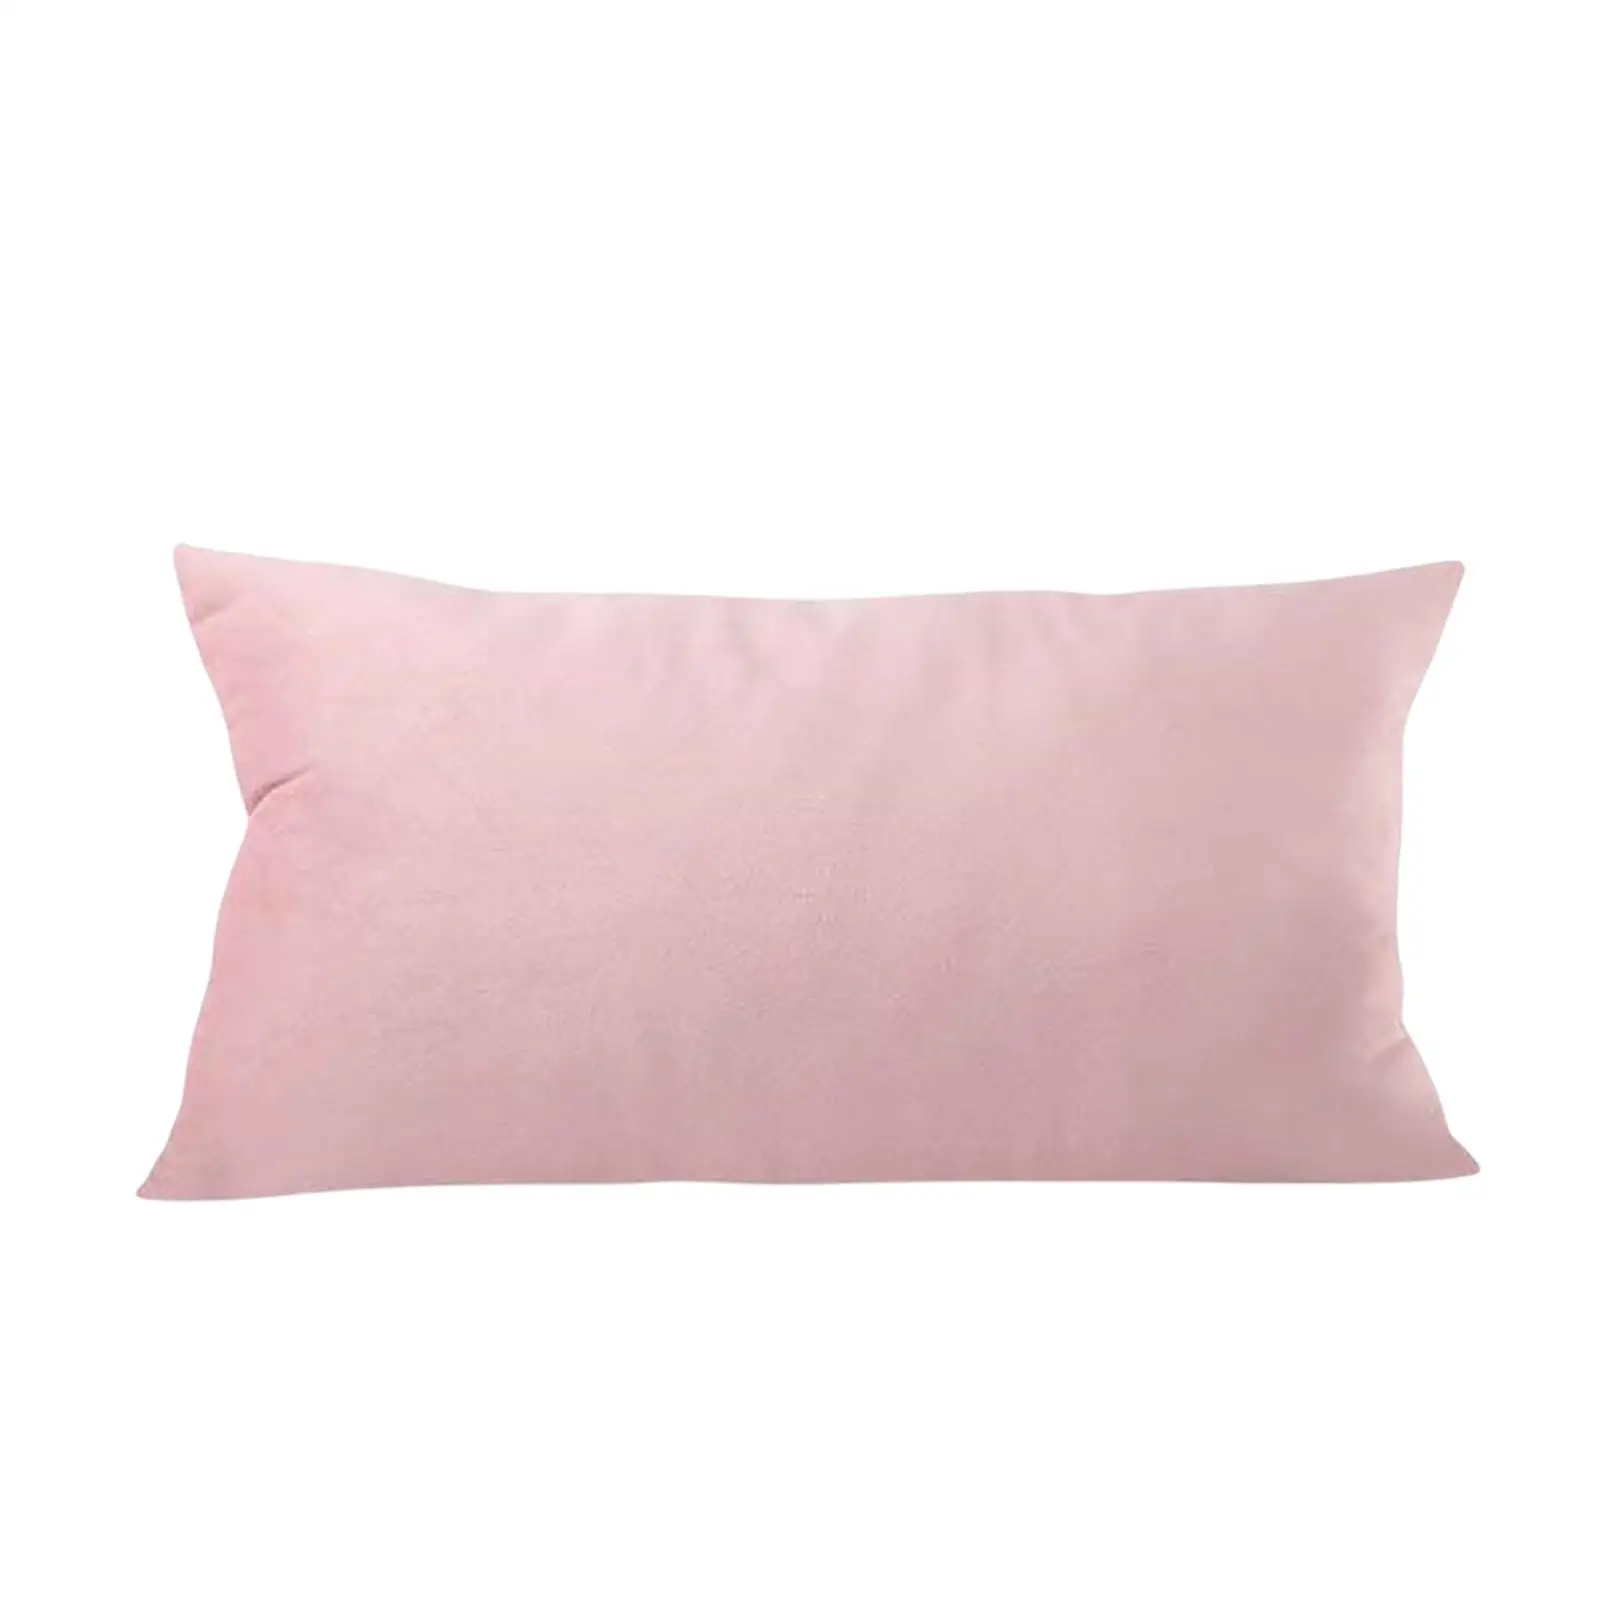 Soft Head Cushion Pillow with pillow Removable Lumbar Pillows for Folding Lounger Garden Terrace recliner Beach Headrest